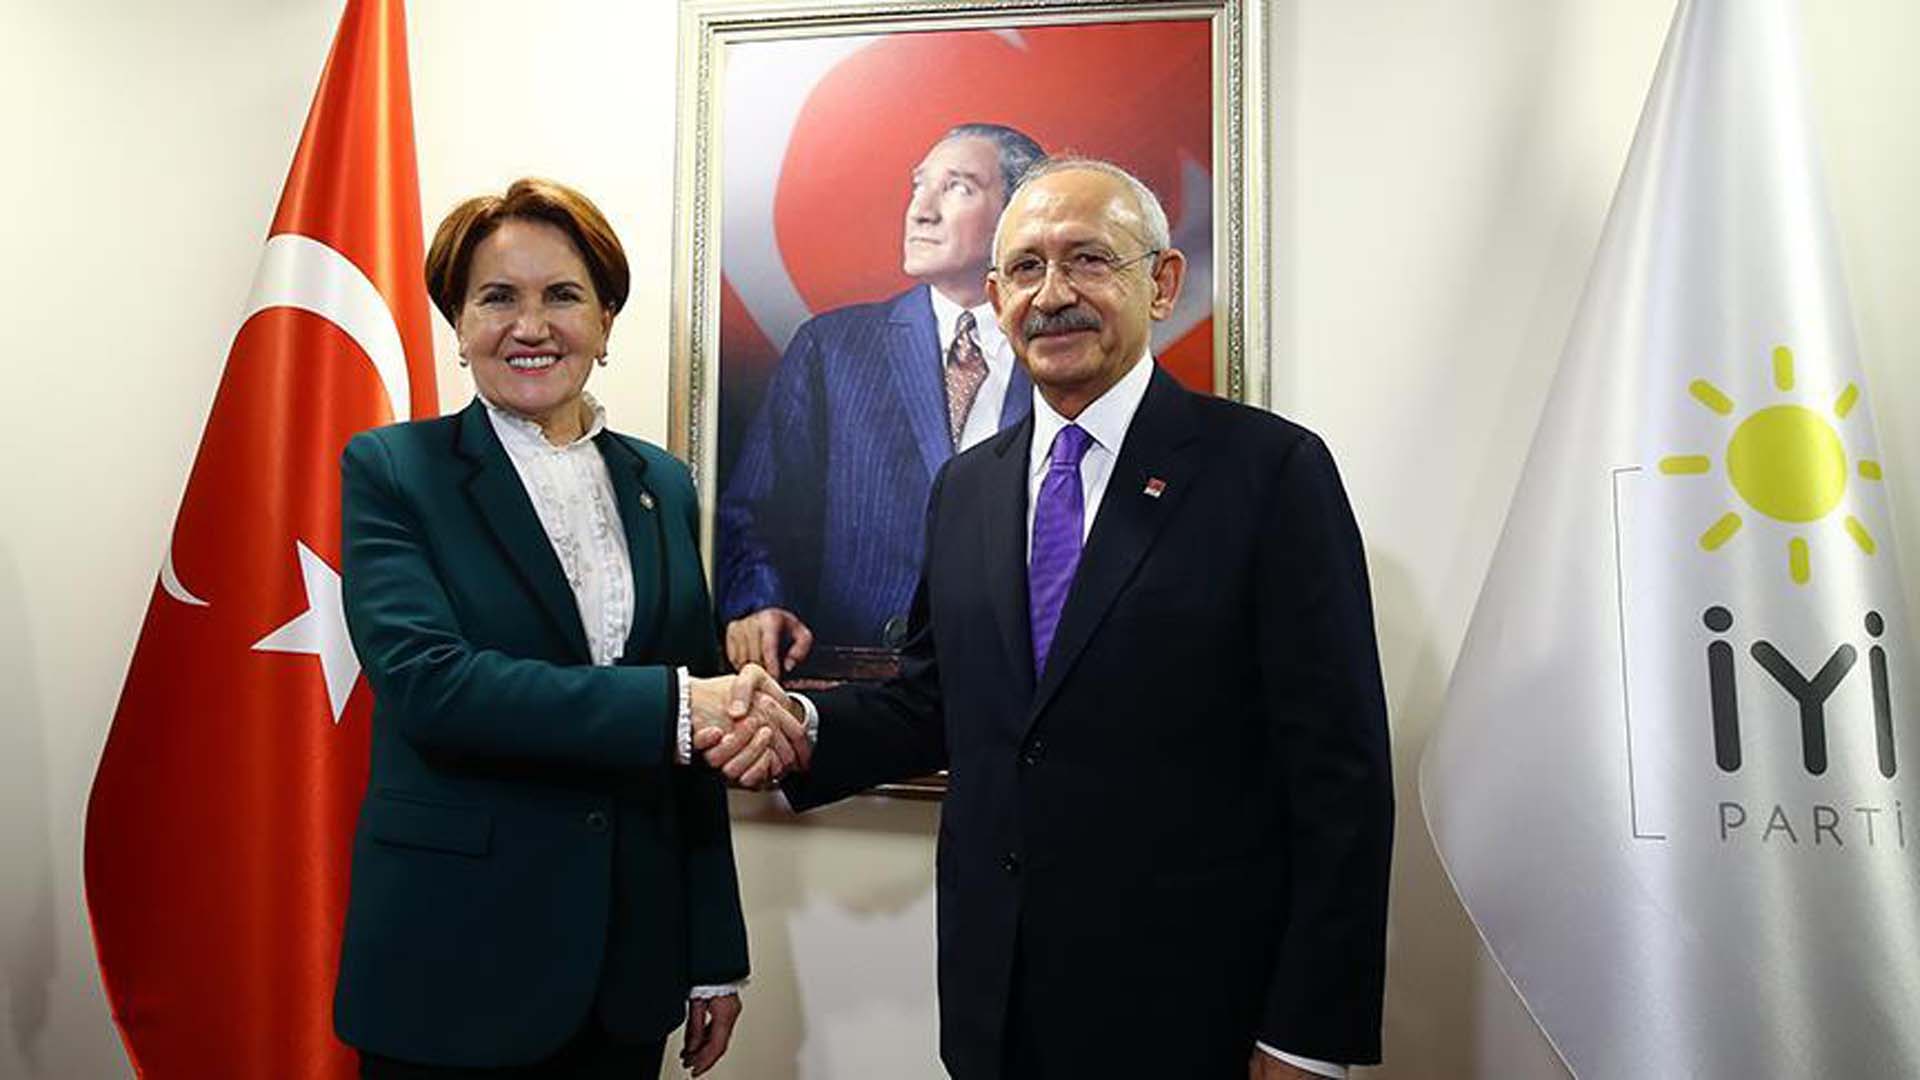 Seçim sonuçlanmadan koltukları paylaşıp anlaştılar! Kılıçdaroğlu Cumhurbaşkanı, Akşener Cumhurbaşkanı Yardımcısı olacakmış! 